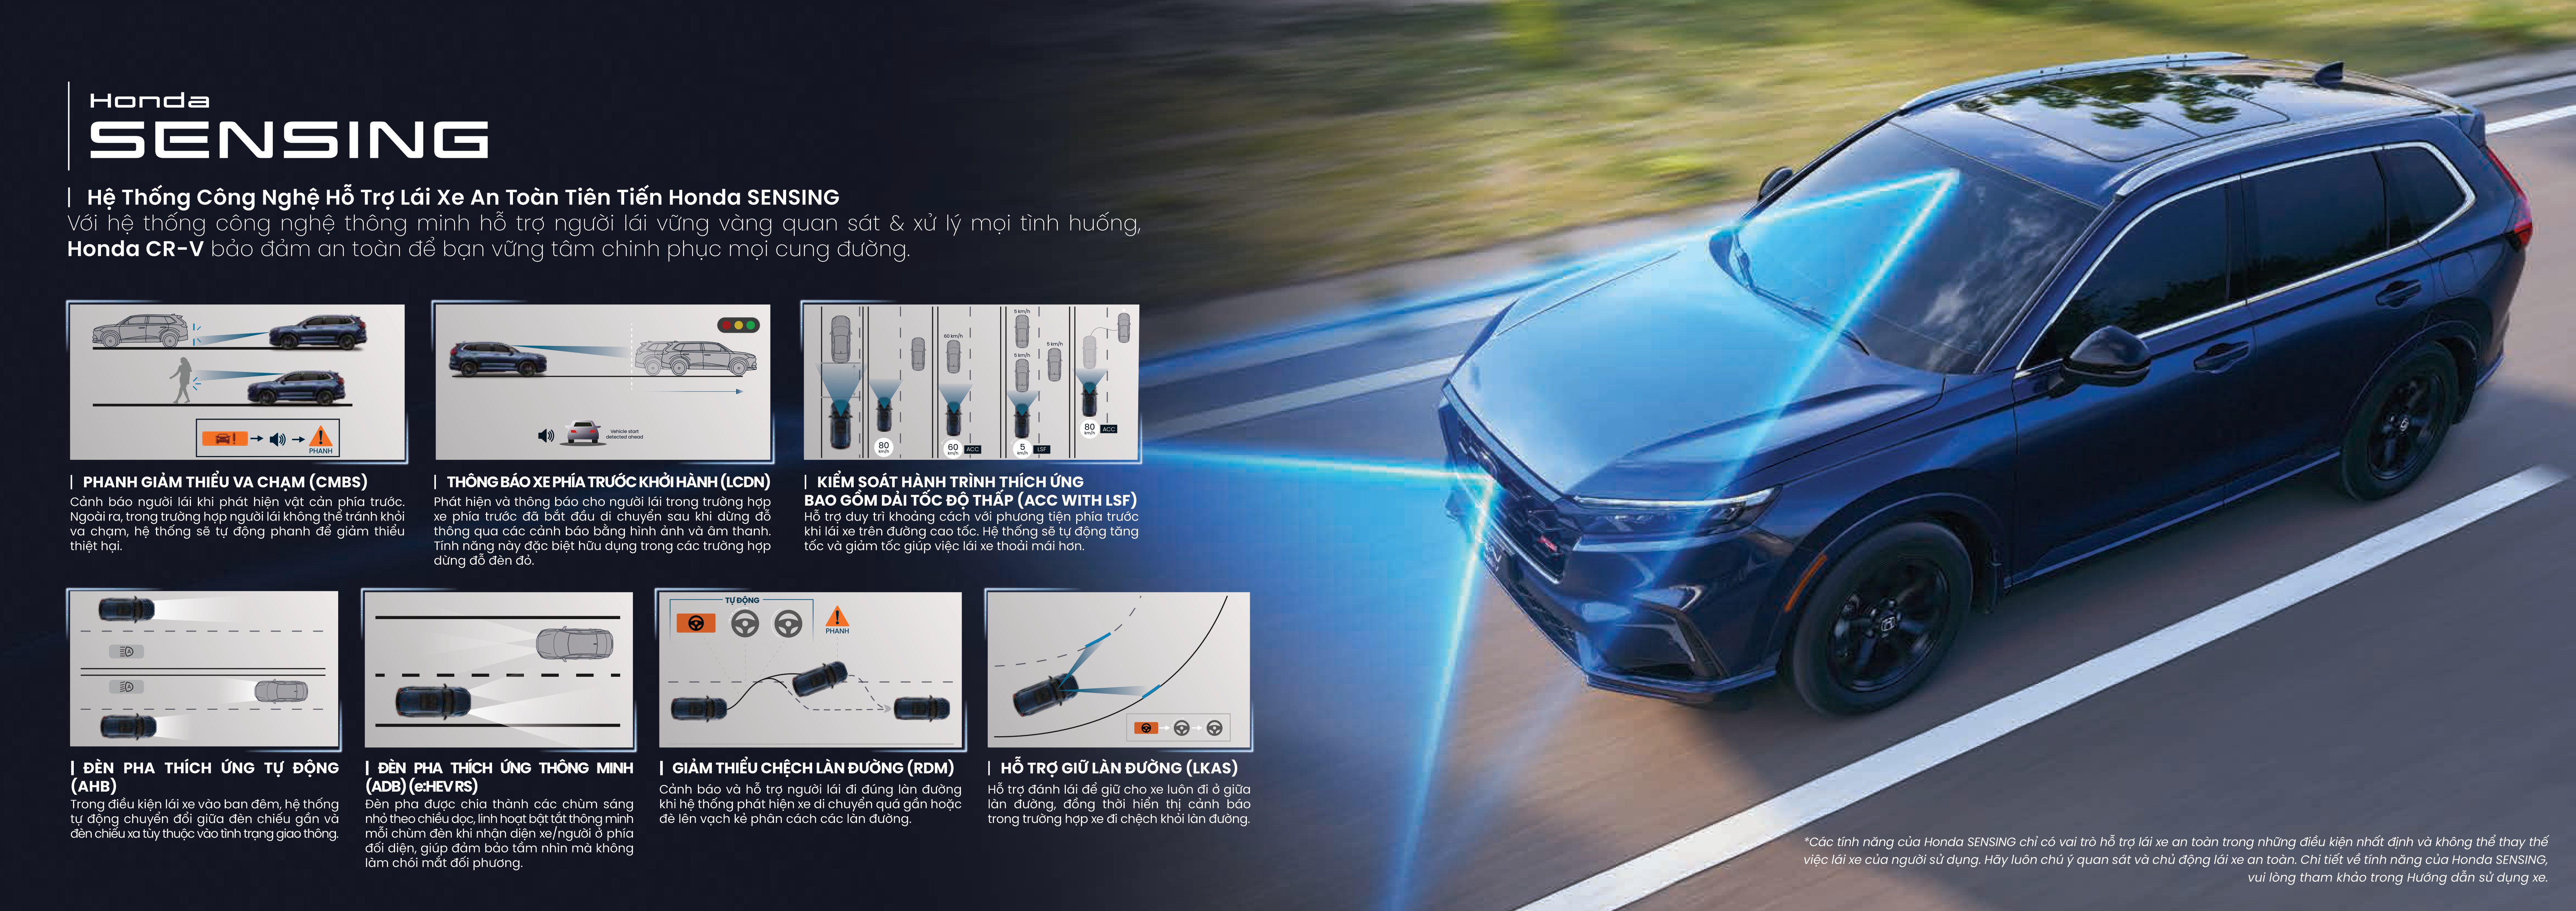 Honda CR-V hoàn toàn mới trang bị Honda Sensing 7 chức năng - Honda Ô tô Khánh Hòa - Nha Trang | Hotline 0905 254 255